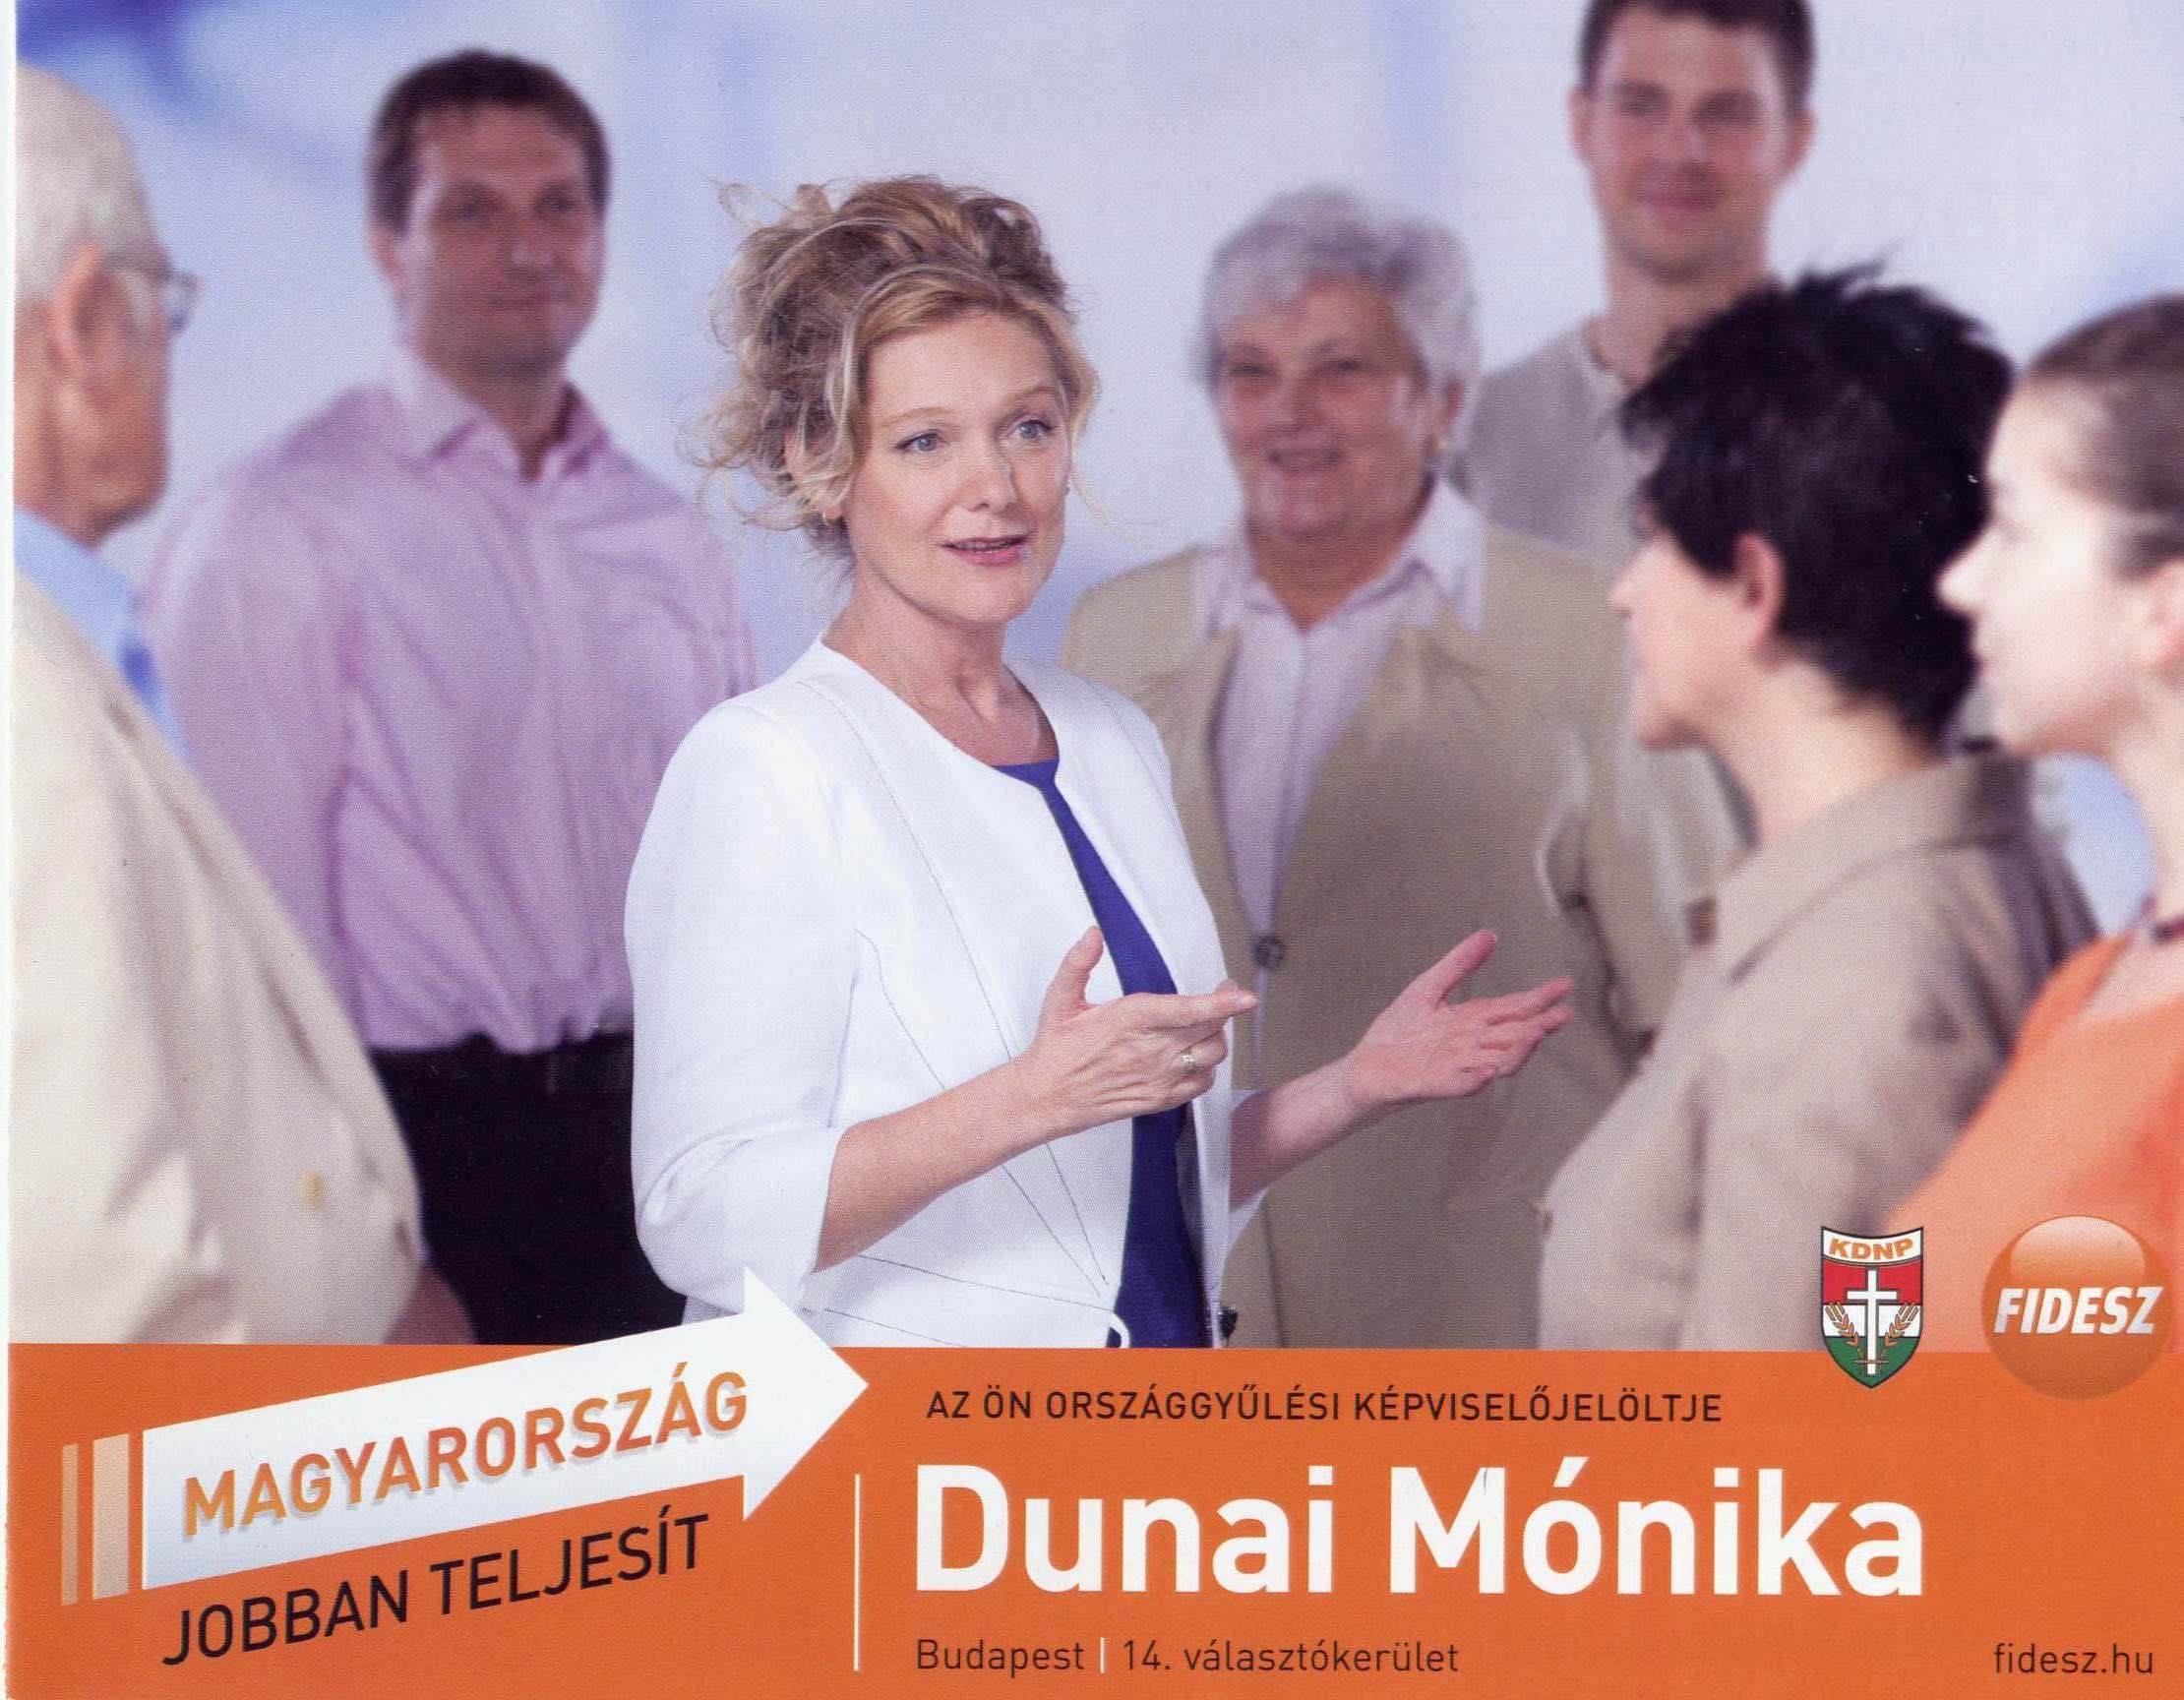 Szorolap-Fidesz+.jpg